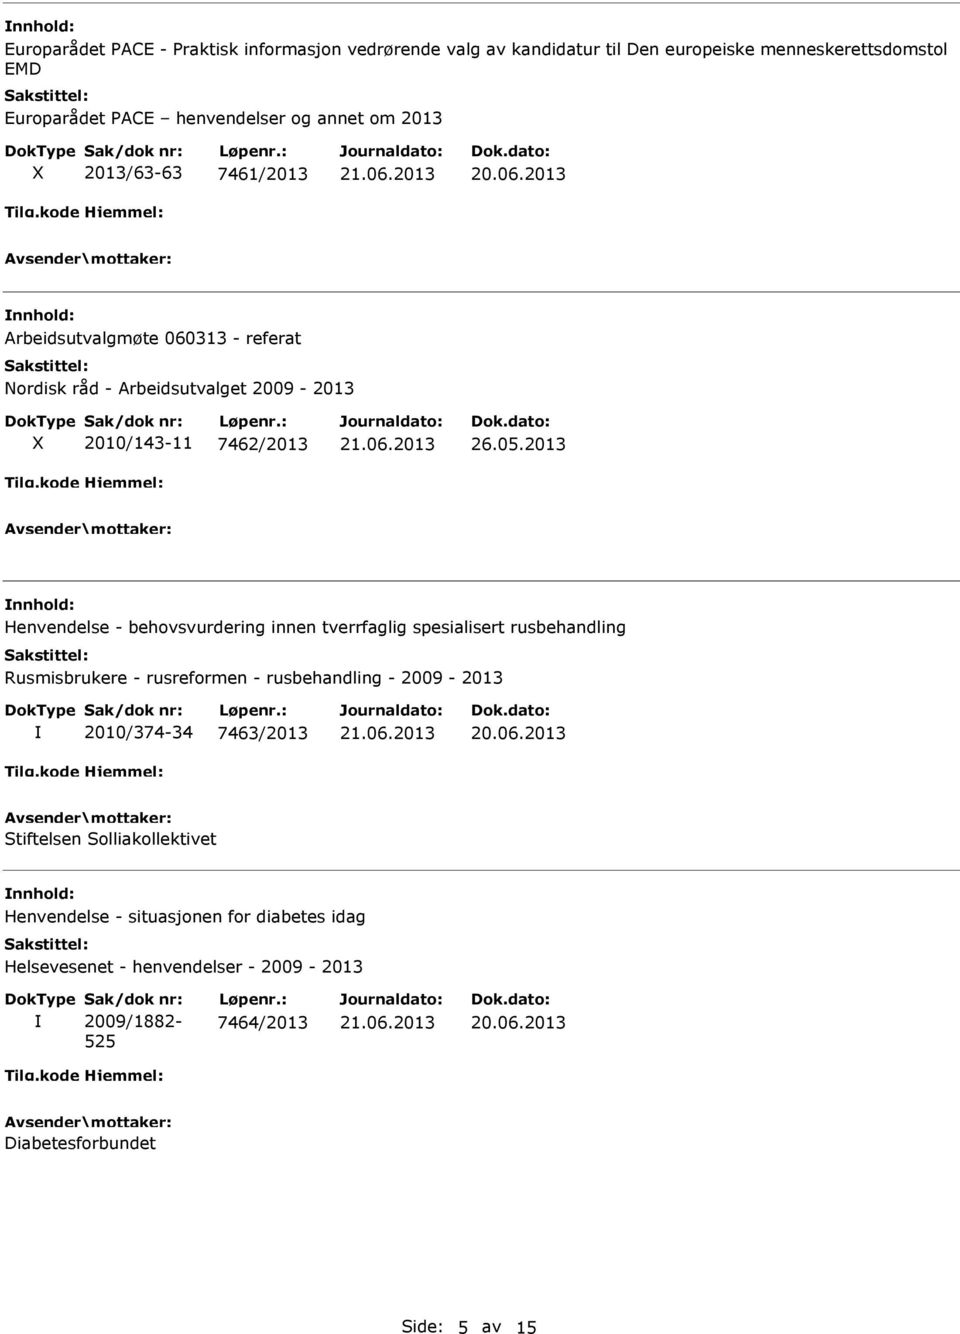 2013 Henvendelse - behovsvurdering innen tverrfaglig spesialisert rusbehandling Rusmisbrukere - rusreformen - rusbehandling - 2009-2013 2010/374-34